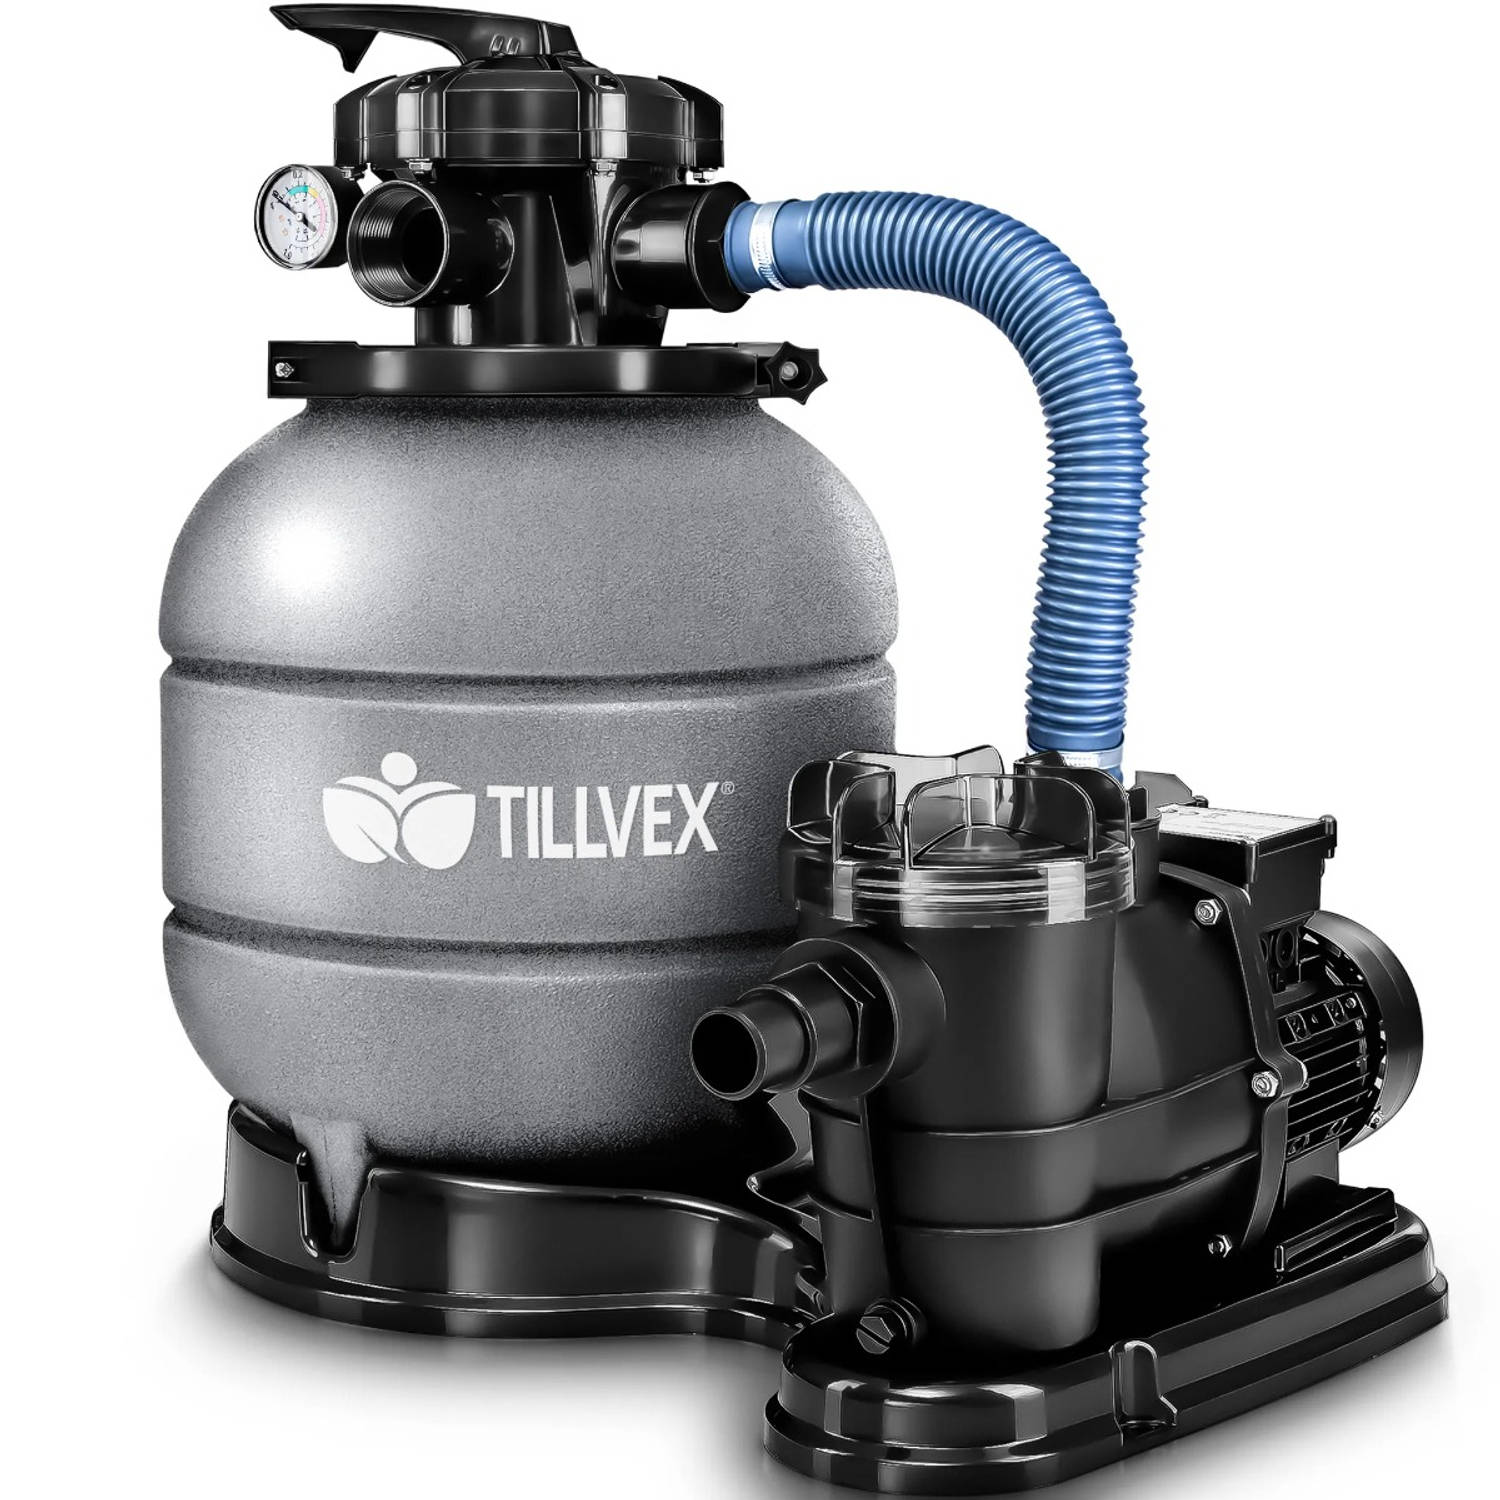 Tillvex zandfiltersysteem grijs -met pomp -filtersysteem- zandfilterfilter- boiler- zwembadfilterpom